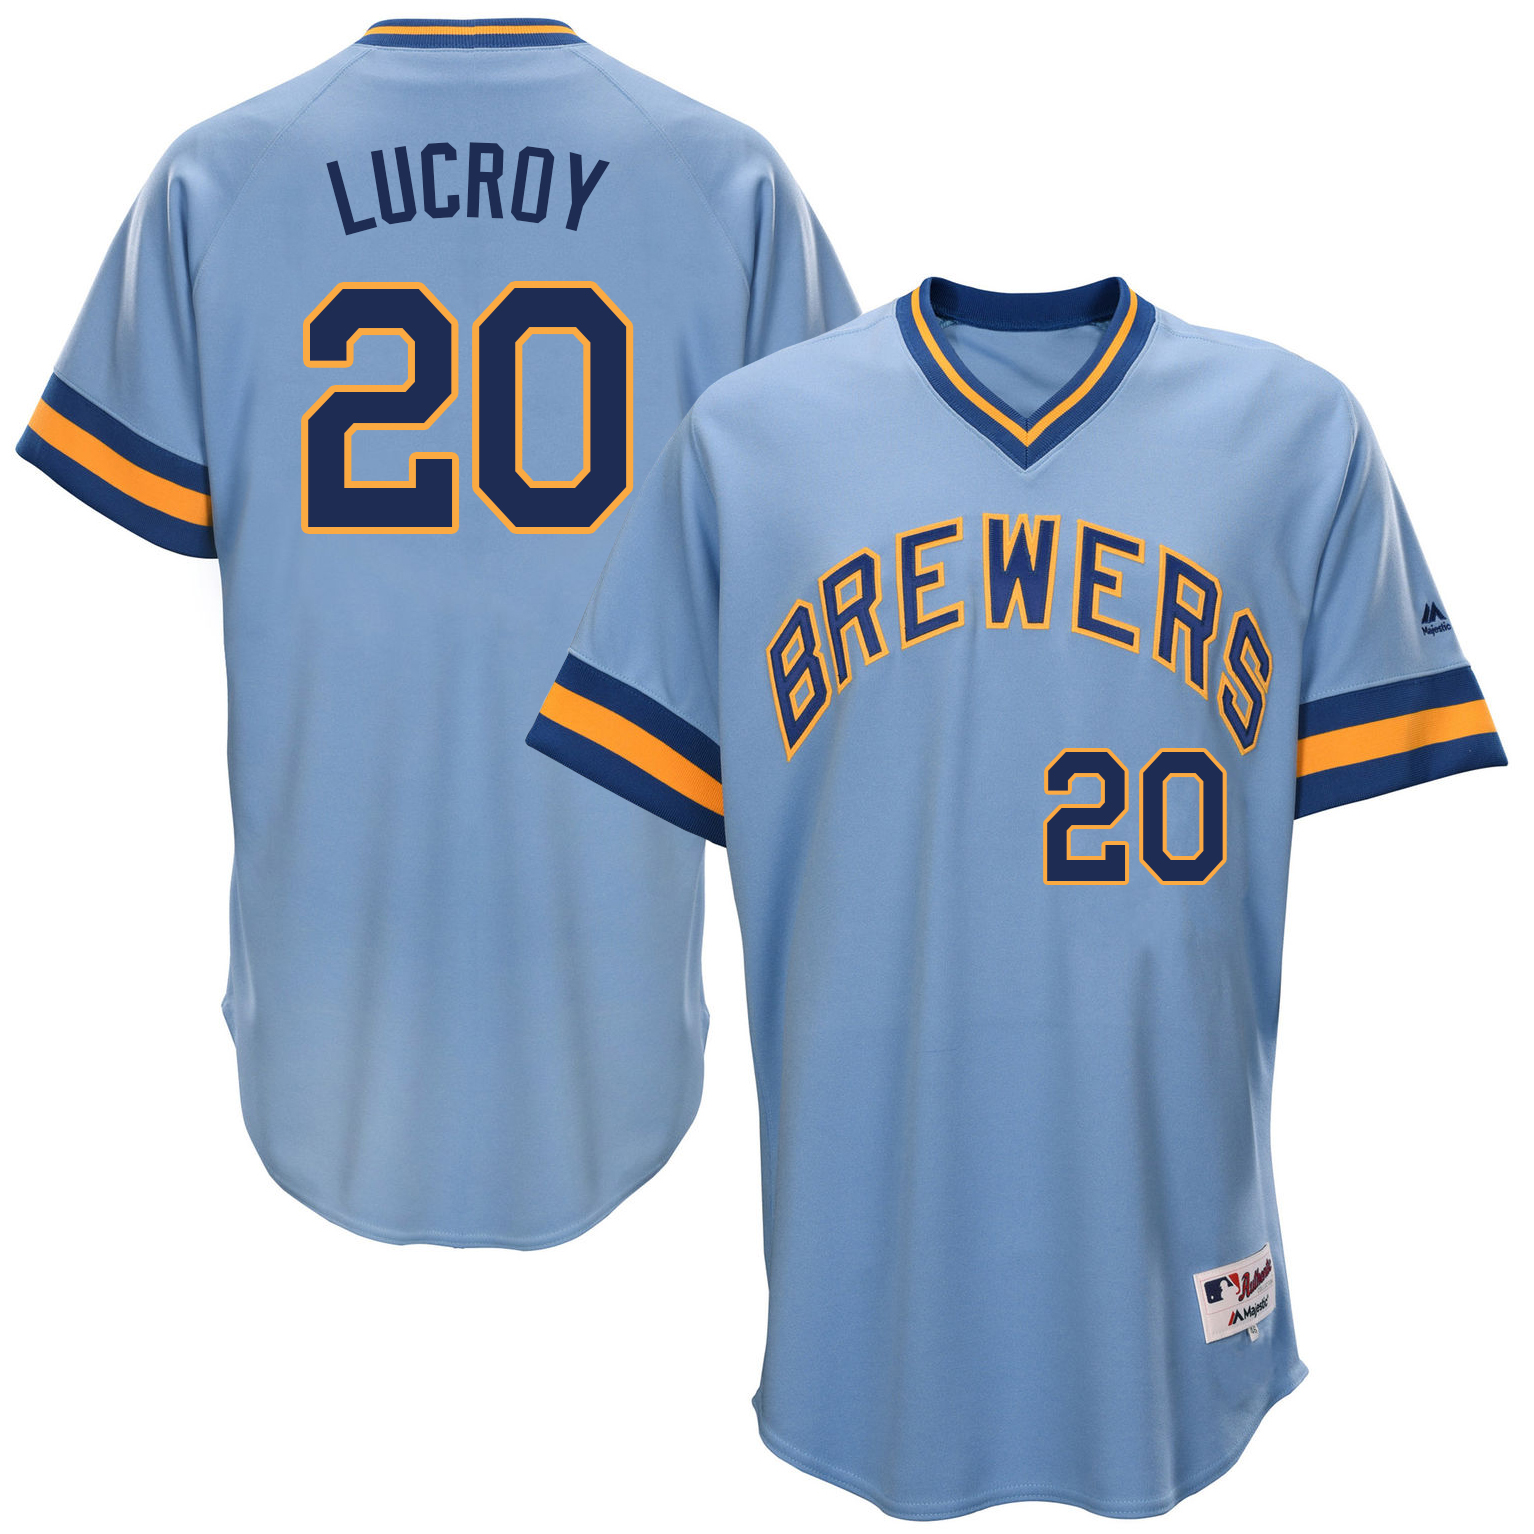 Brewers 20 Jonathan Lucroy Light Blue Throwback Jersey